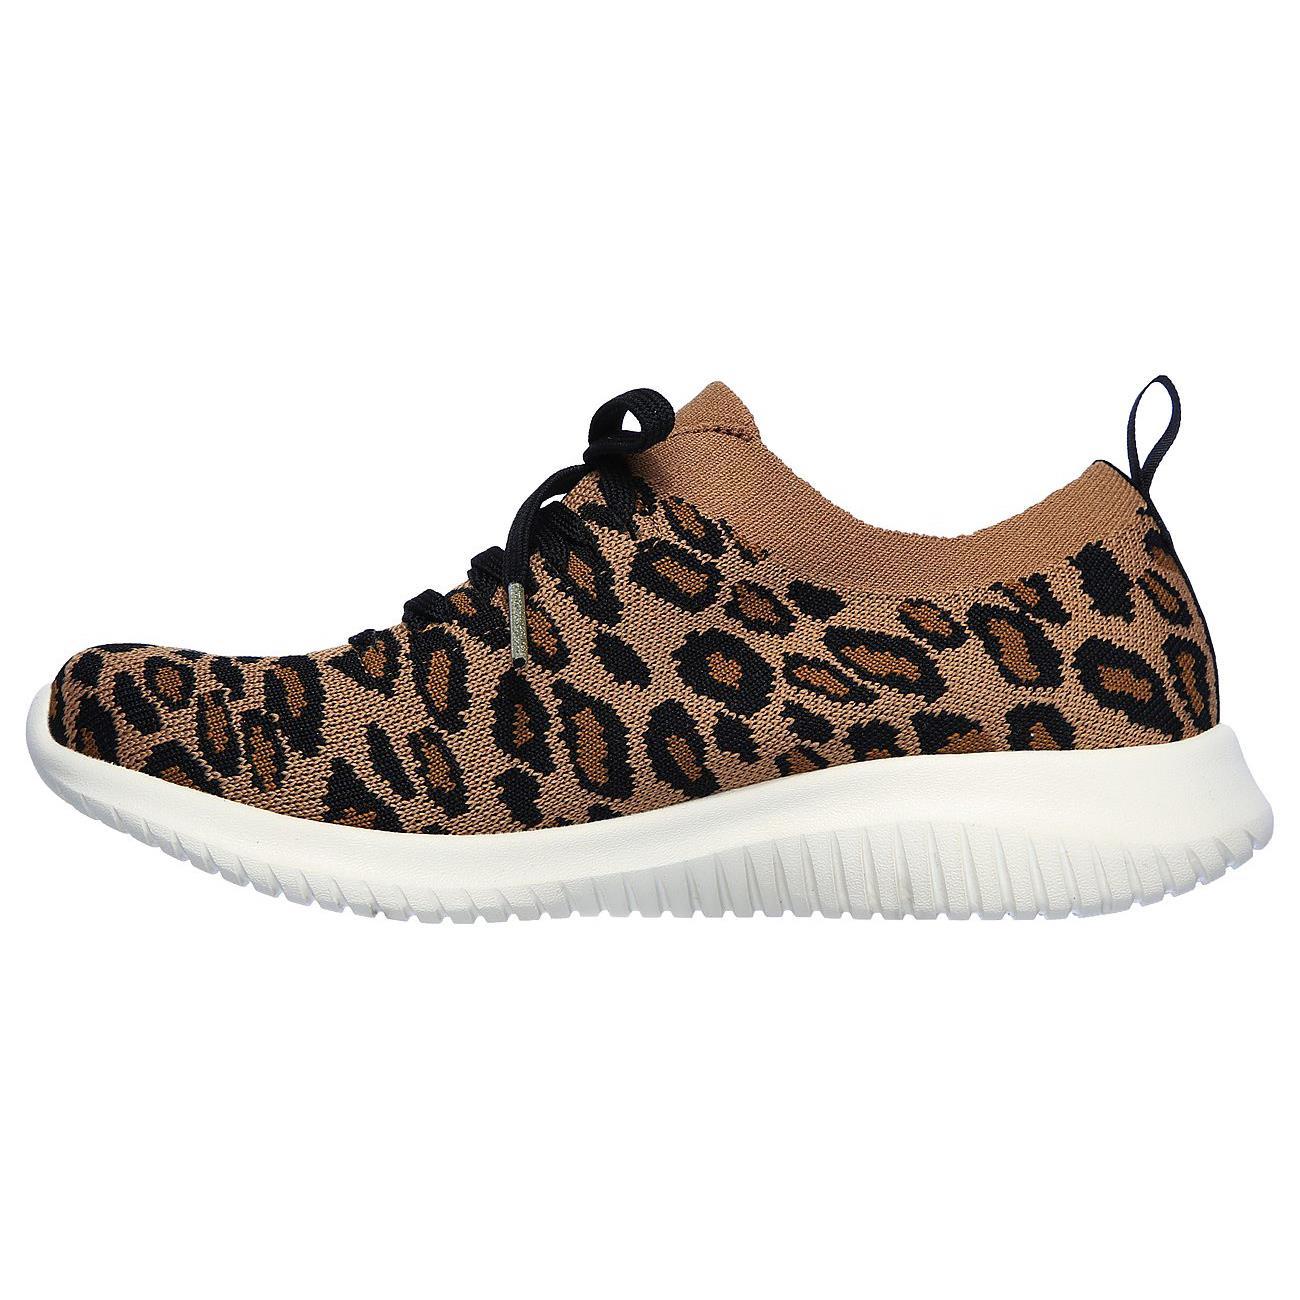 Skechers S Wide Fit Safari Tour Leopard Memory Foam Shoes in Brown | Lyst